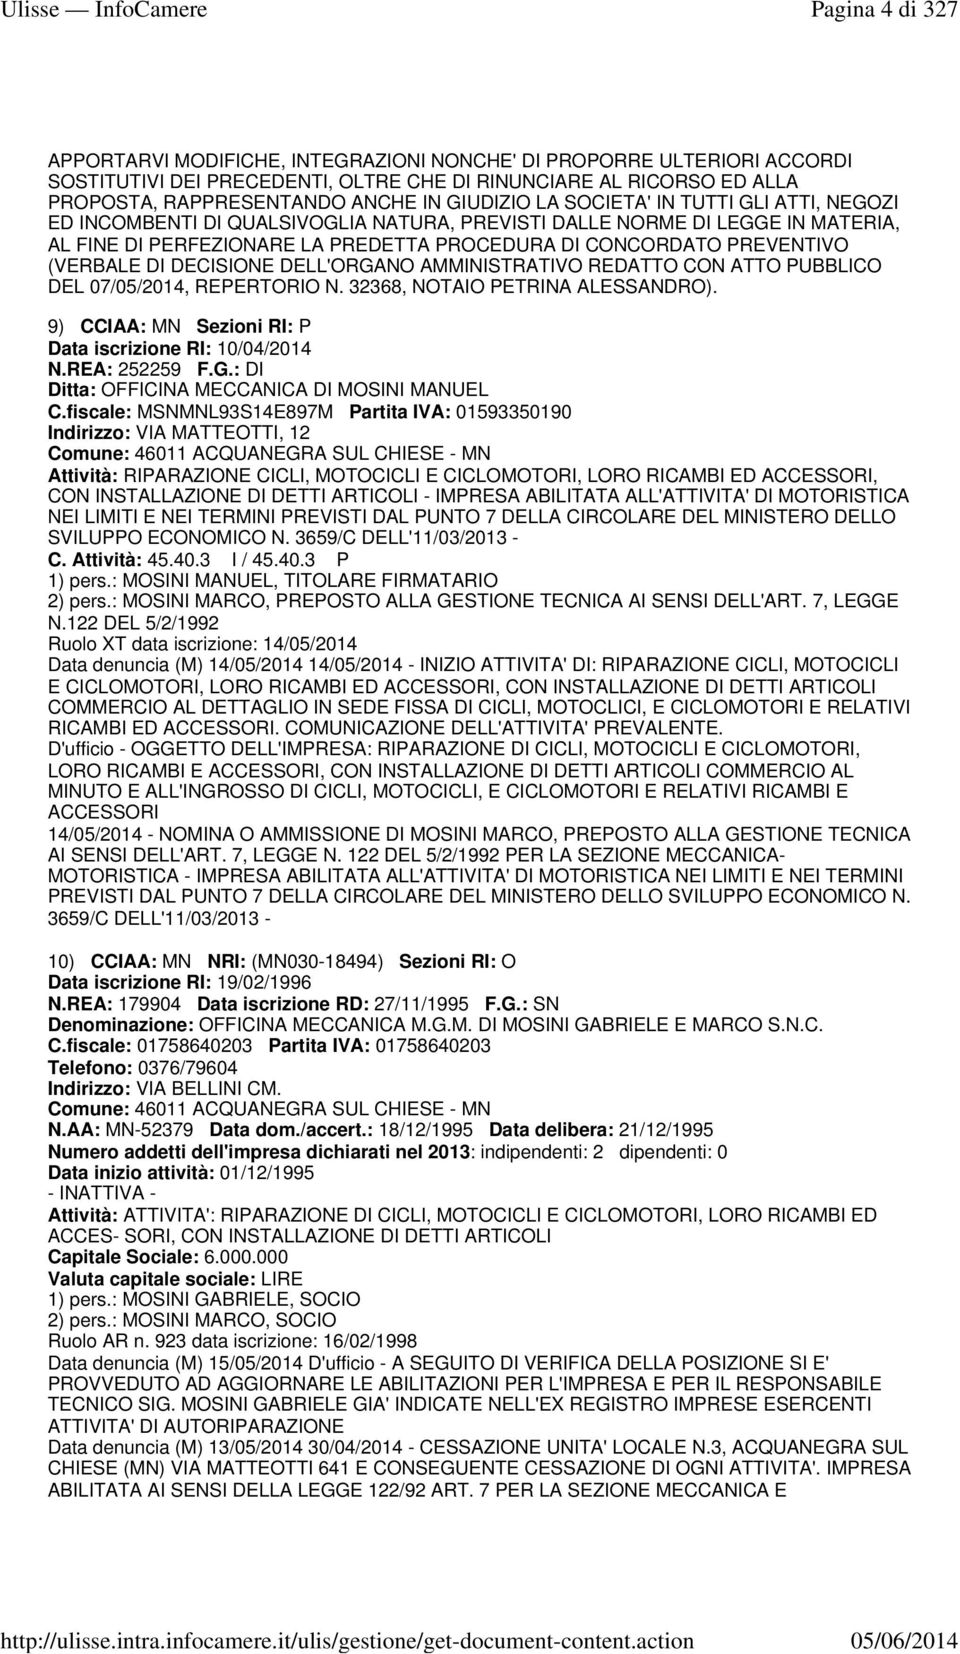 (VERBALE DI DECISIONE DELL'ORGANO AMMINISTRATIVO REDATTO CON ATTO PUBBLICO DEL 07/05/2014, REPERTORIO N. 32368, NOTAIO PETRINA ALESSANDRO). 9) CCIAA: MN Sezioni RI: P Data iscrizione RI: 10/04/2014 N.